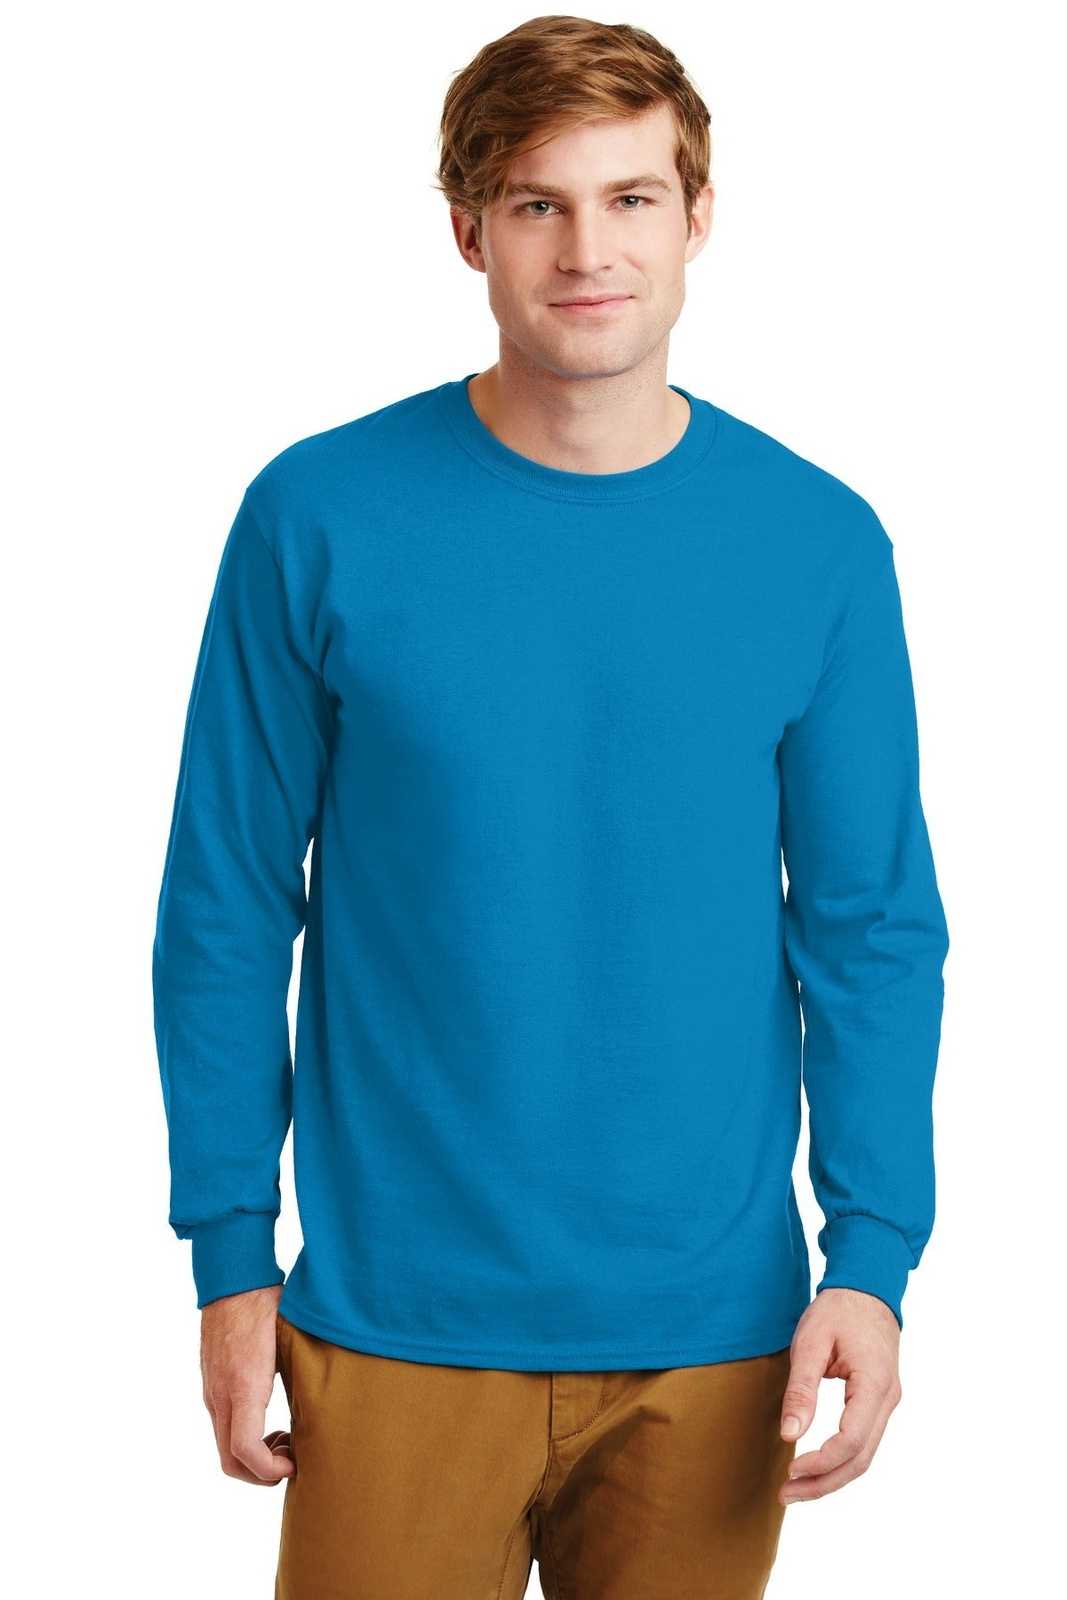 Gildan G2400 Ultra Cotton 100% Cotton Long Sleeve T-Shirt - Sapphire - HIT a Double